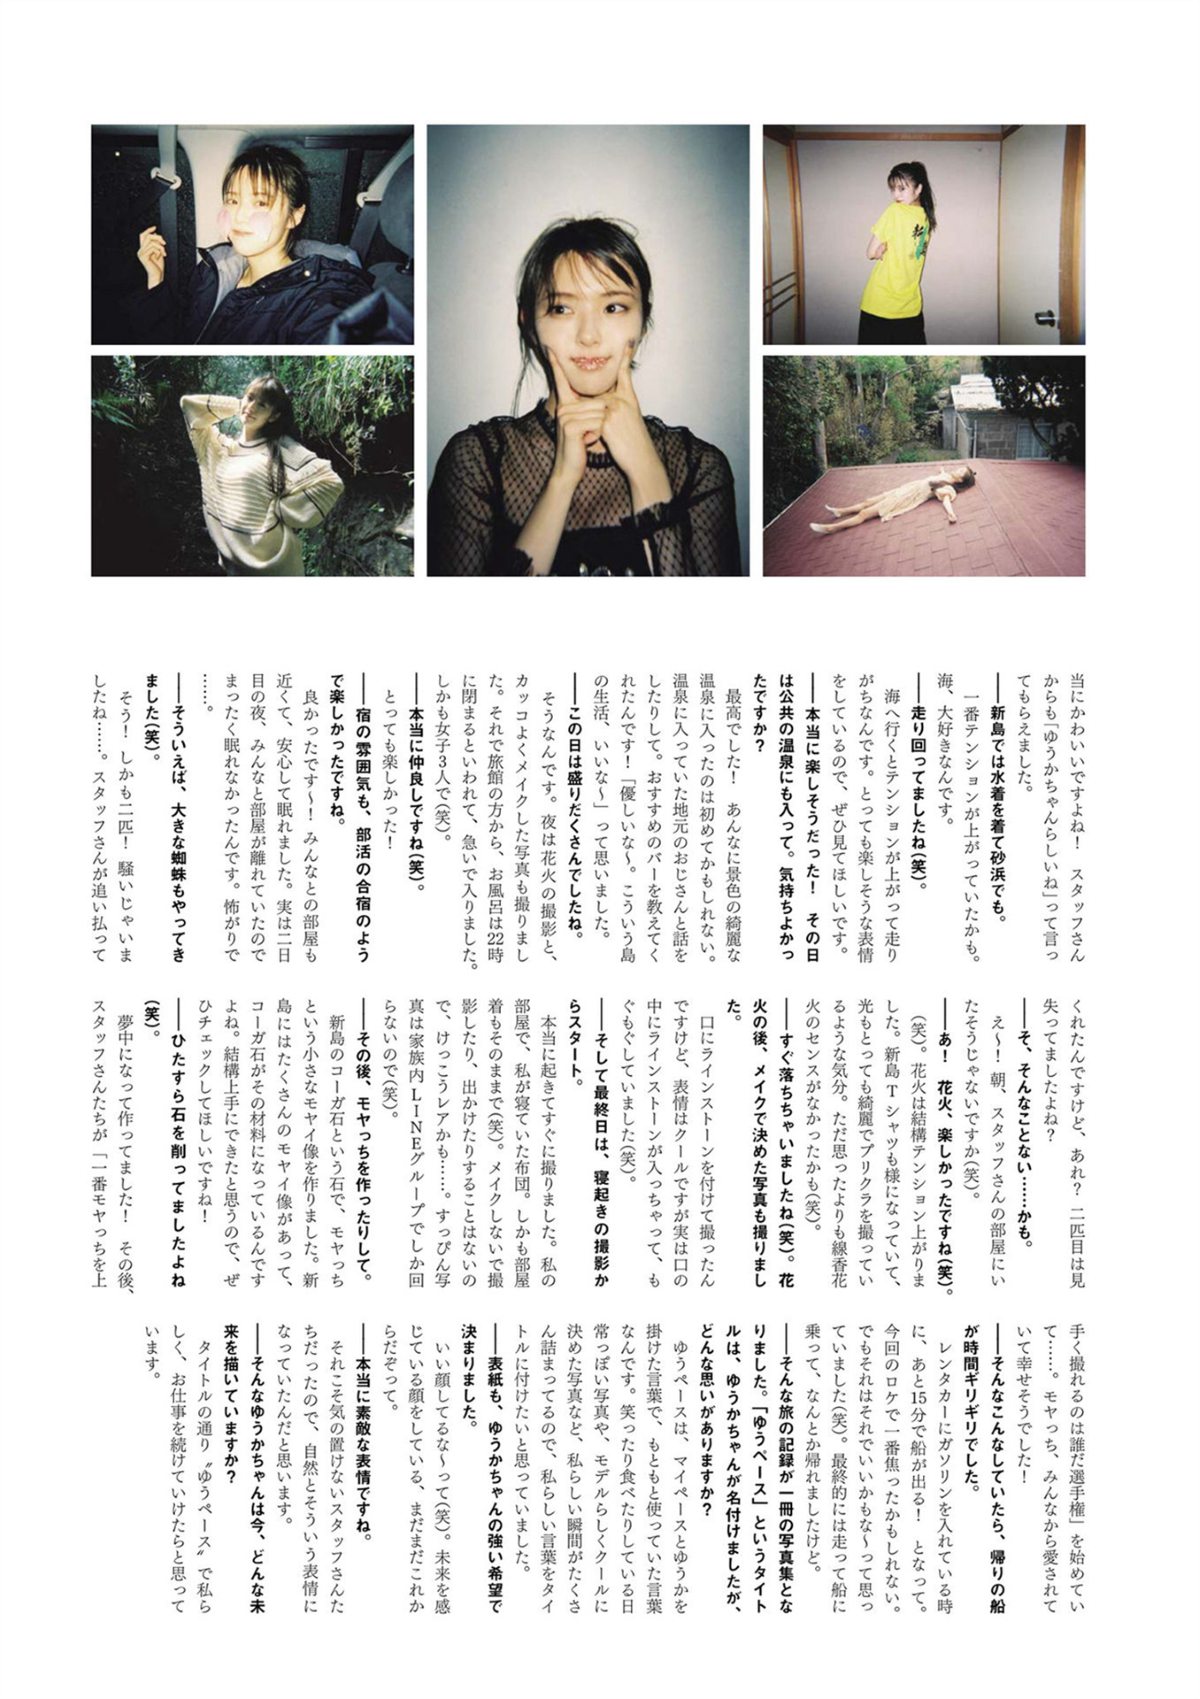 Photobook Yuka Suzuki 鈴木ゆうか 1st Photobook Yu pace ゆうペース 2021 07 20 0115 1588539144.jpg